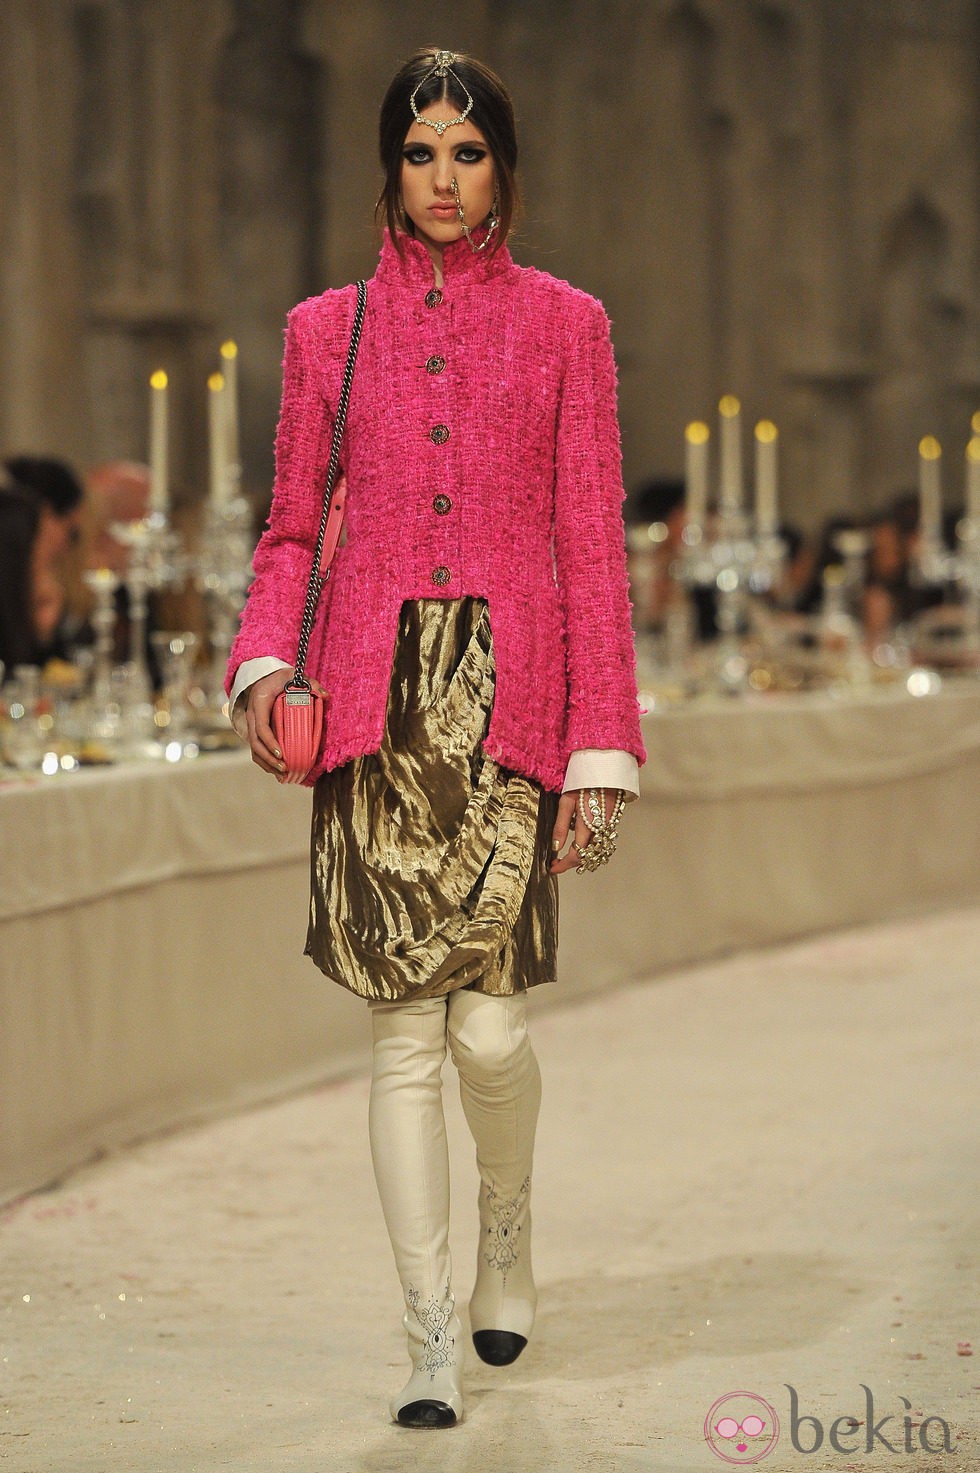 Abrigo de tweed rosa y falda drapeada dorada